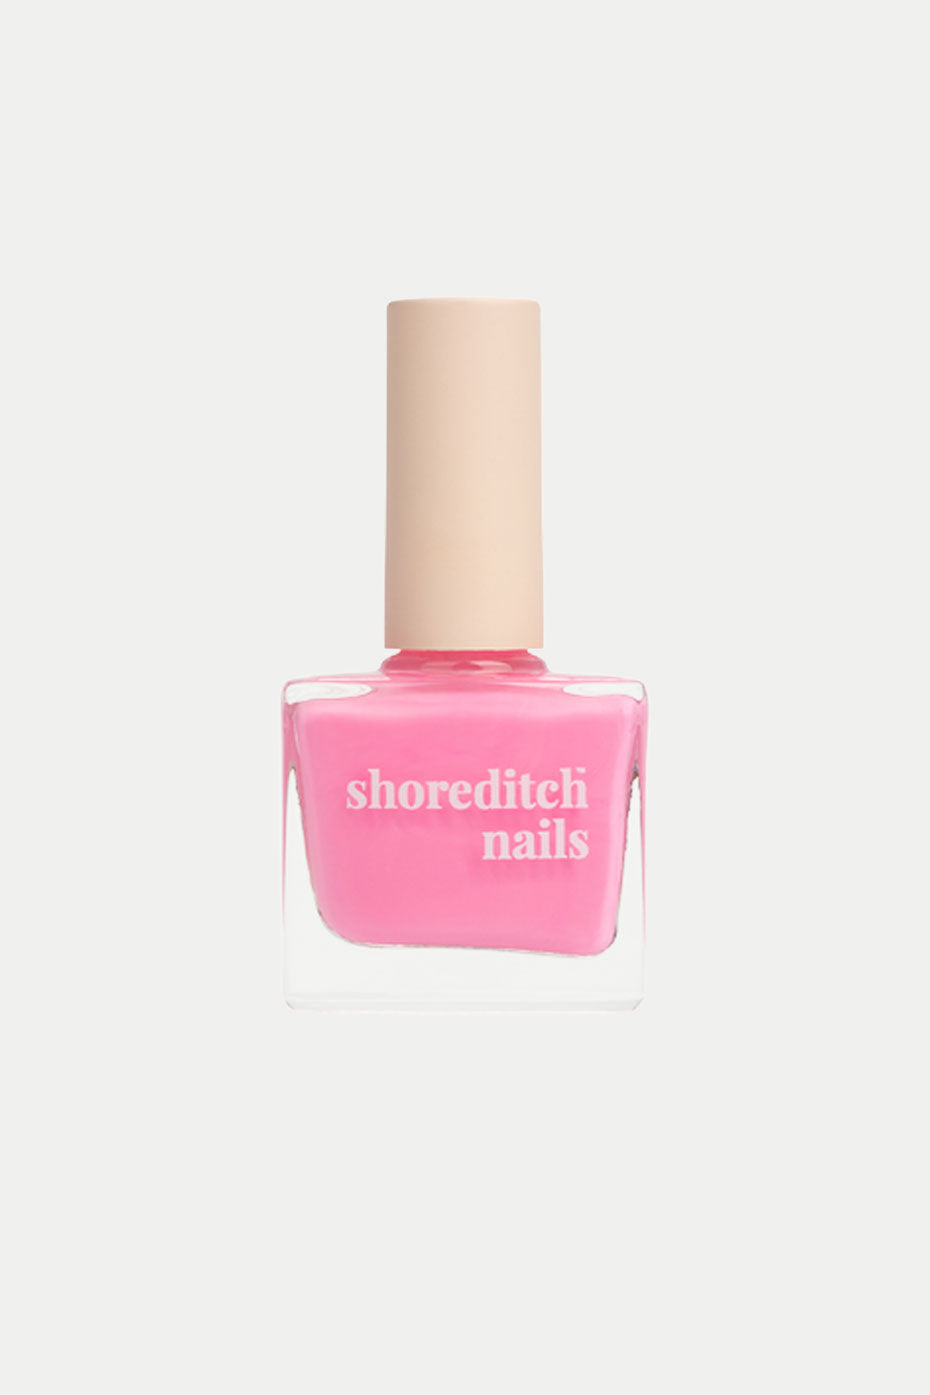 shoreditch-nails-columbia-road-nail-polish